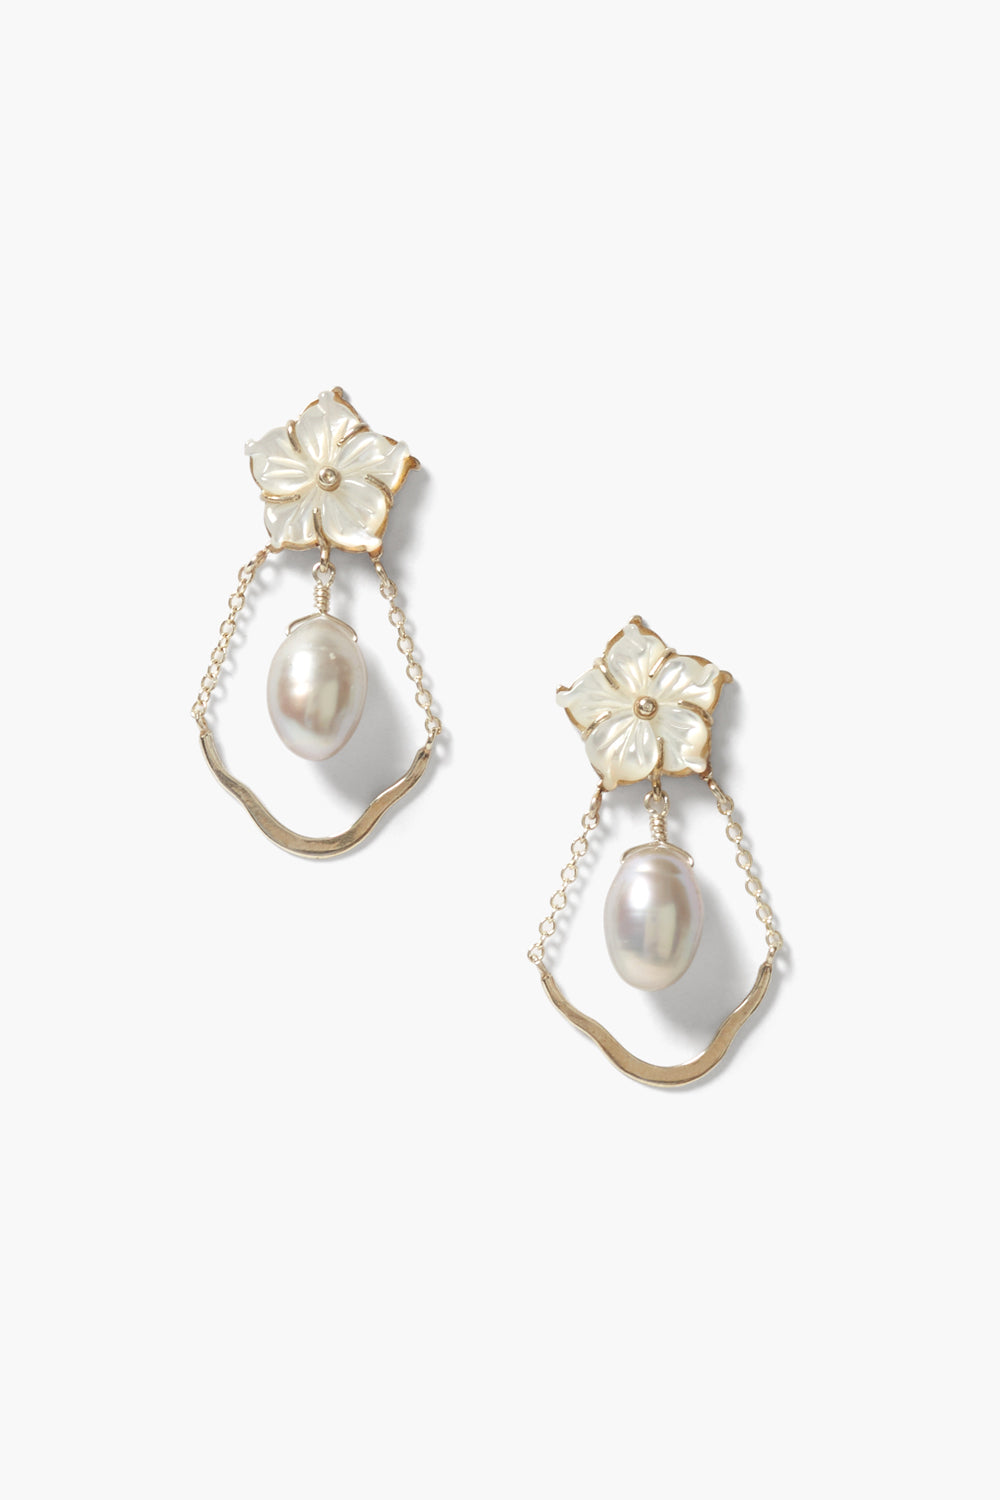 Plumeria Chandelier Earrings Grey Pearl Mix – Chan Luu